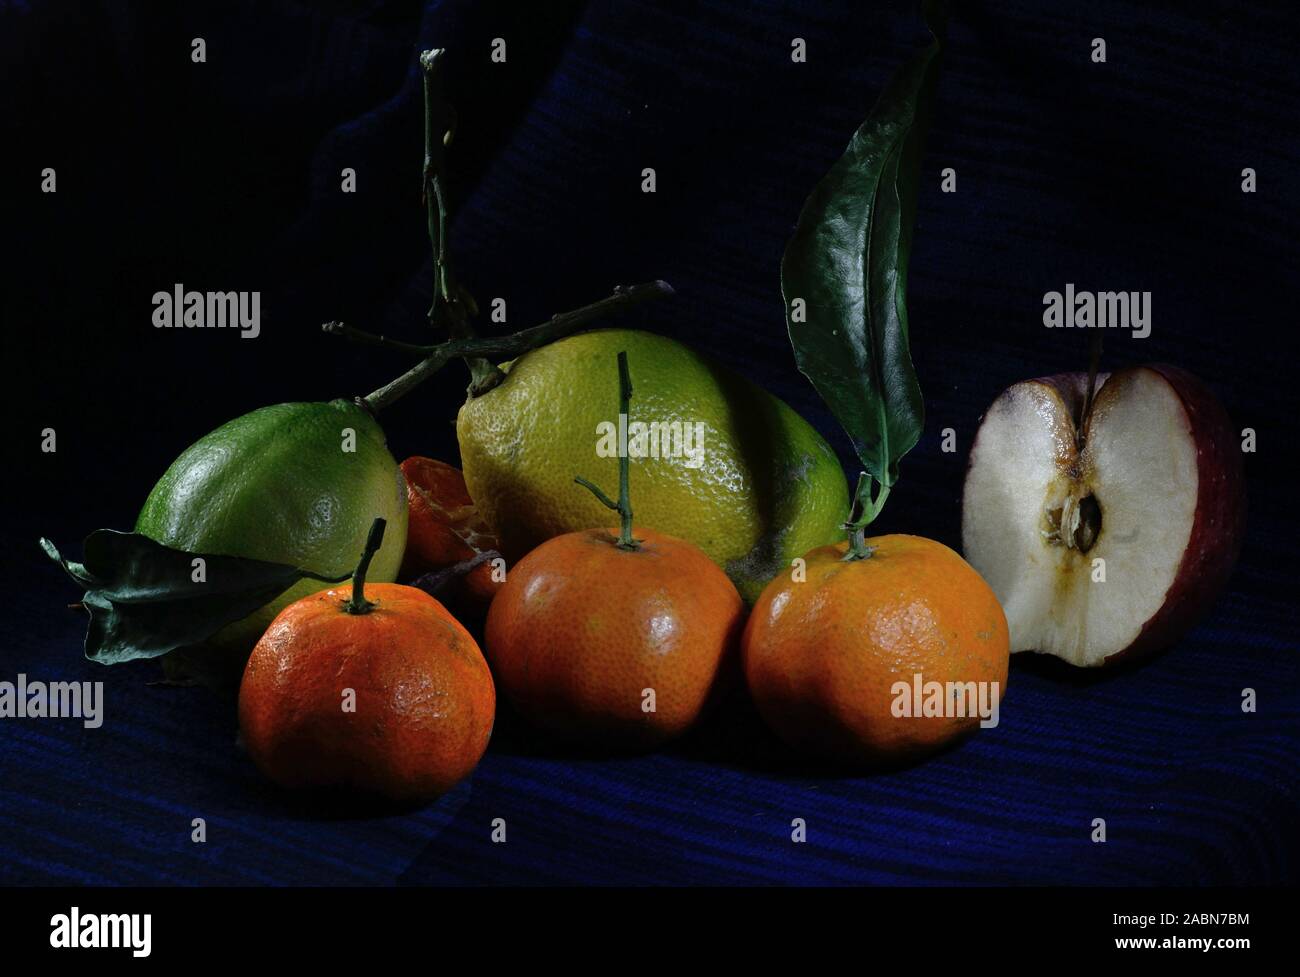 Zitrone und tamiringe Früchte mit einem halben Apfel auf einem dunkelblauen Hintergrund Stockfoto